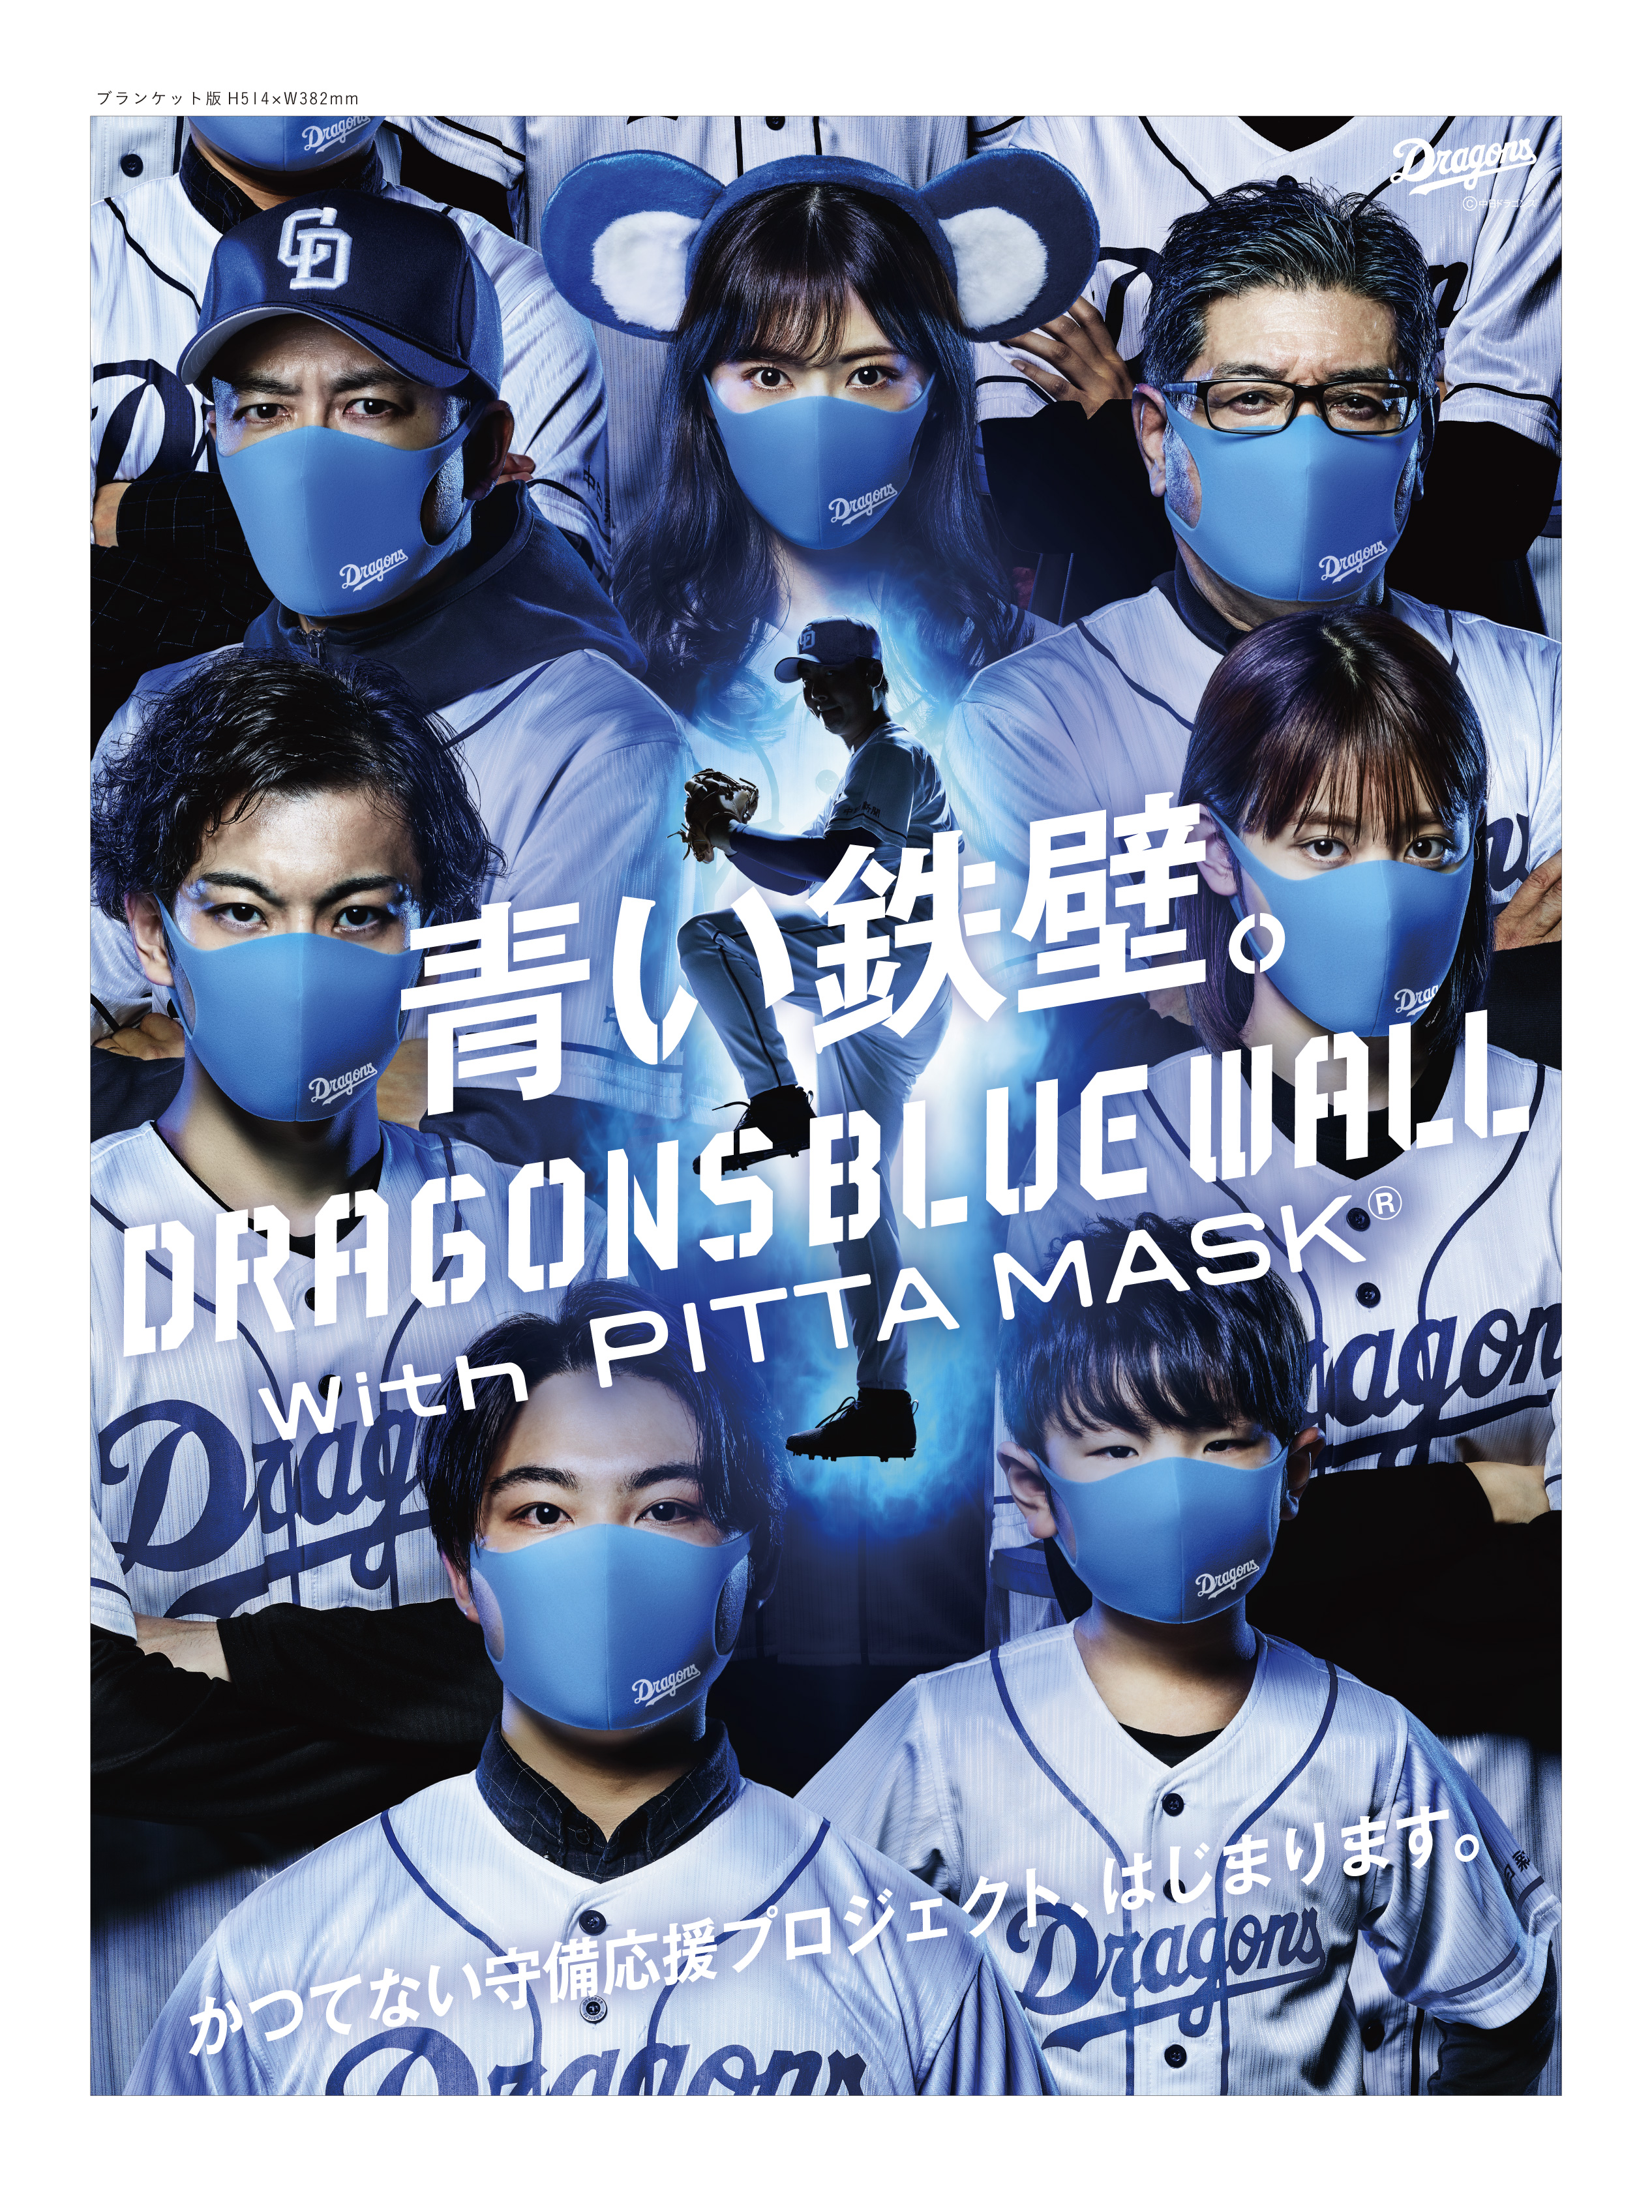 かつてない 守り 守備 の応援プロジェクト Dragons Blue Wall With Pitta Mask 6月12日 金 プロジェクト 始動 株式会社アラクスのプレスリリース